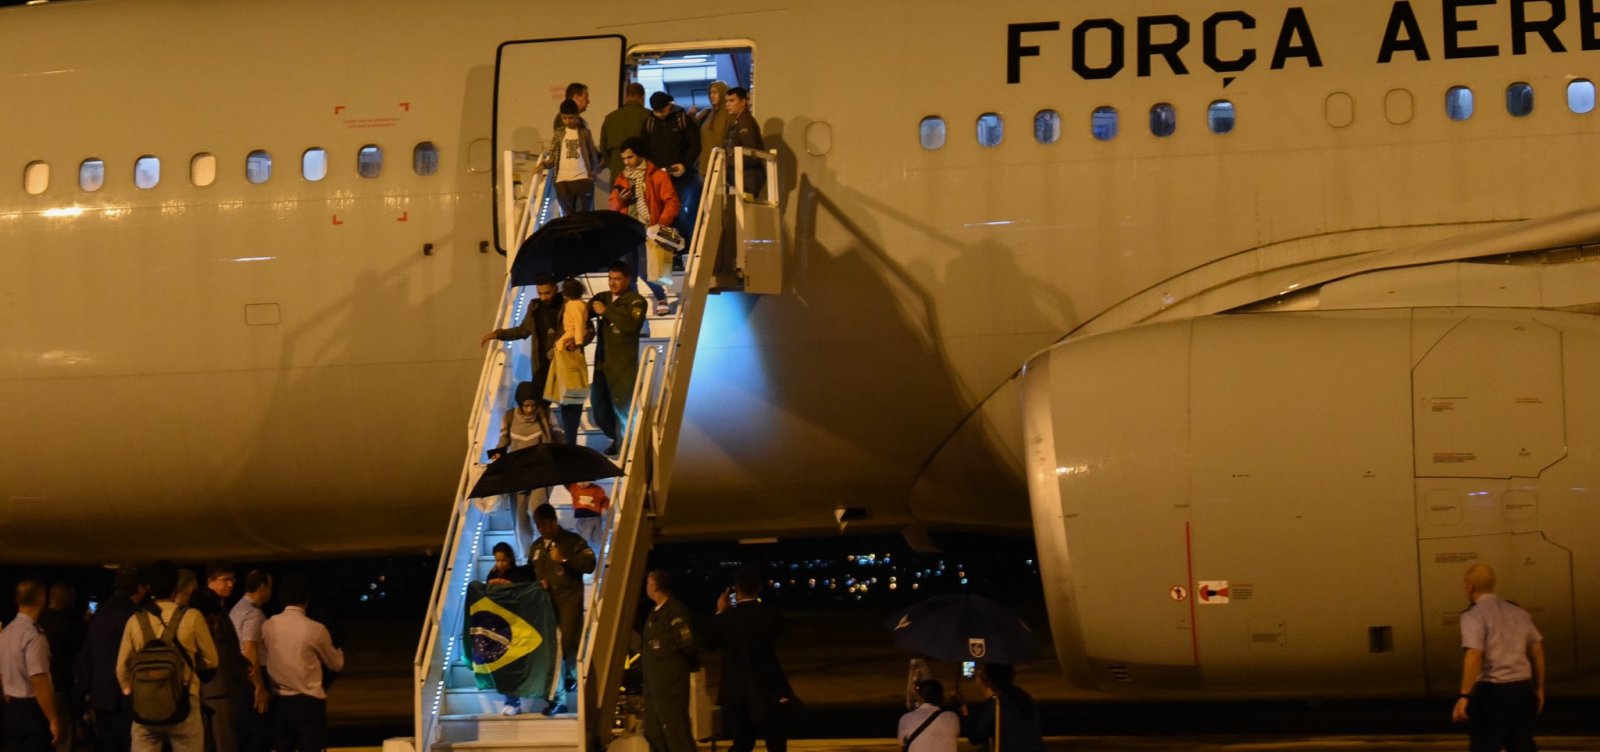 Após Israel vetar saída de 24 pessoas em Gaza, 48 repatriados chegam ao Brasil